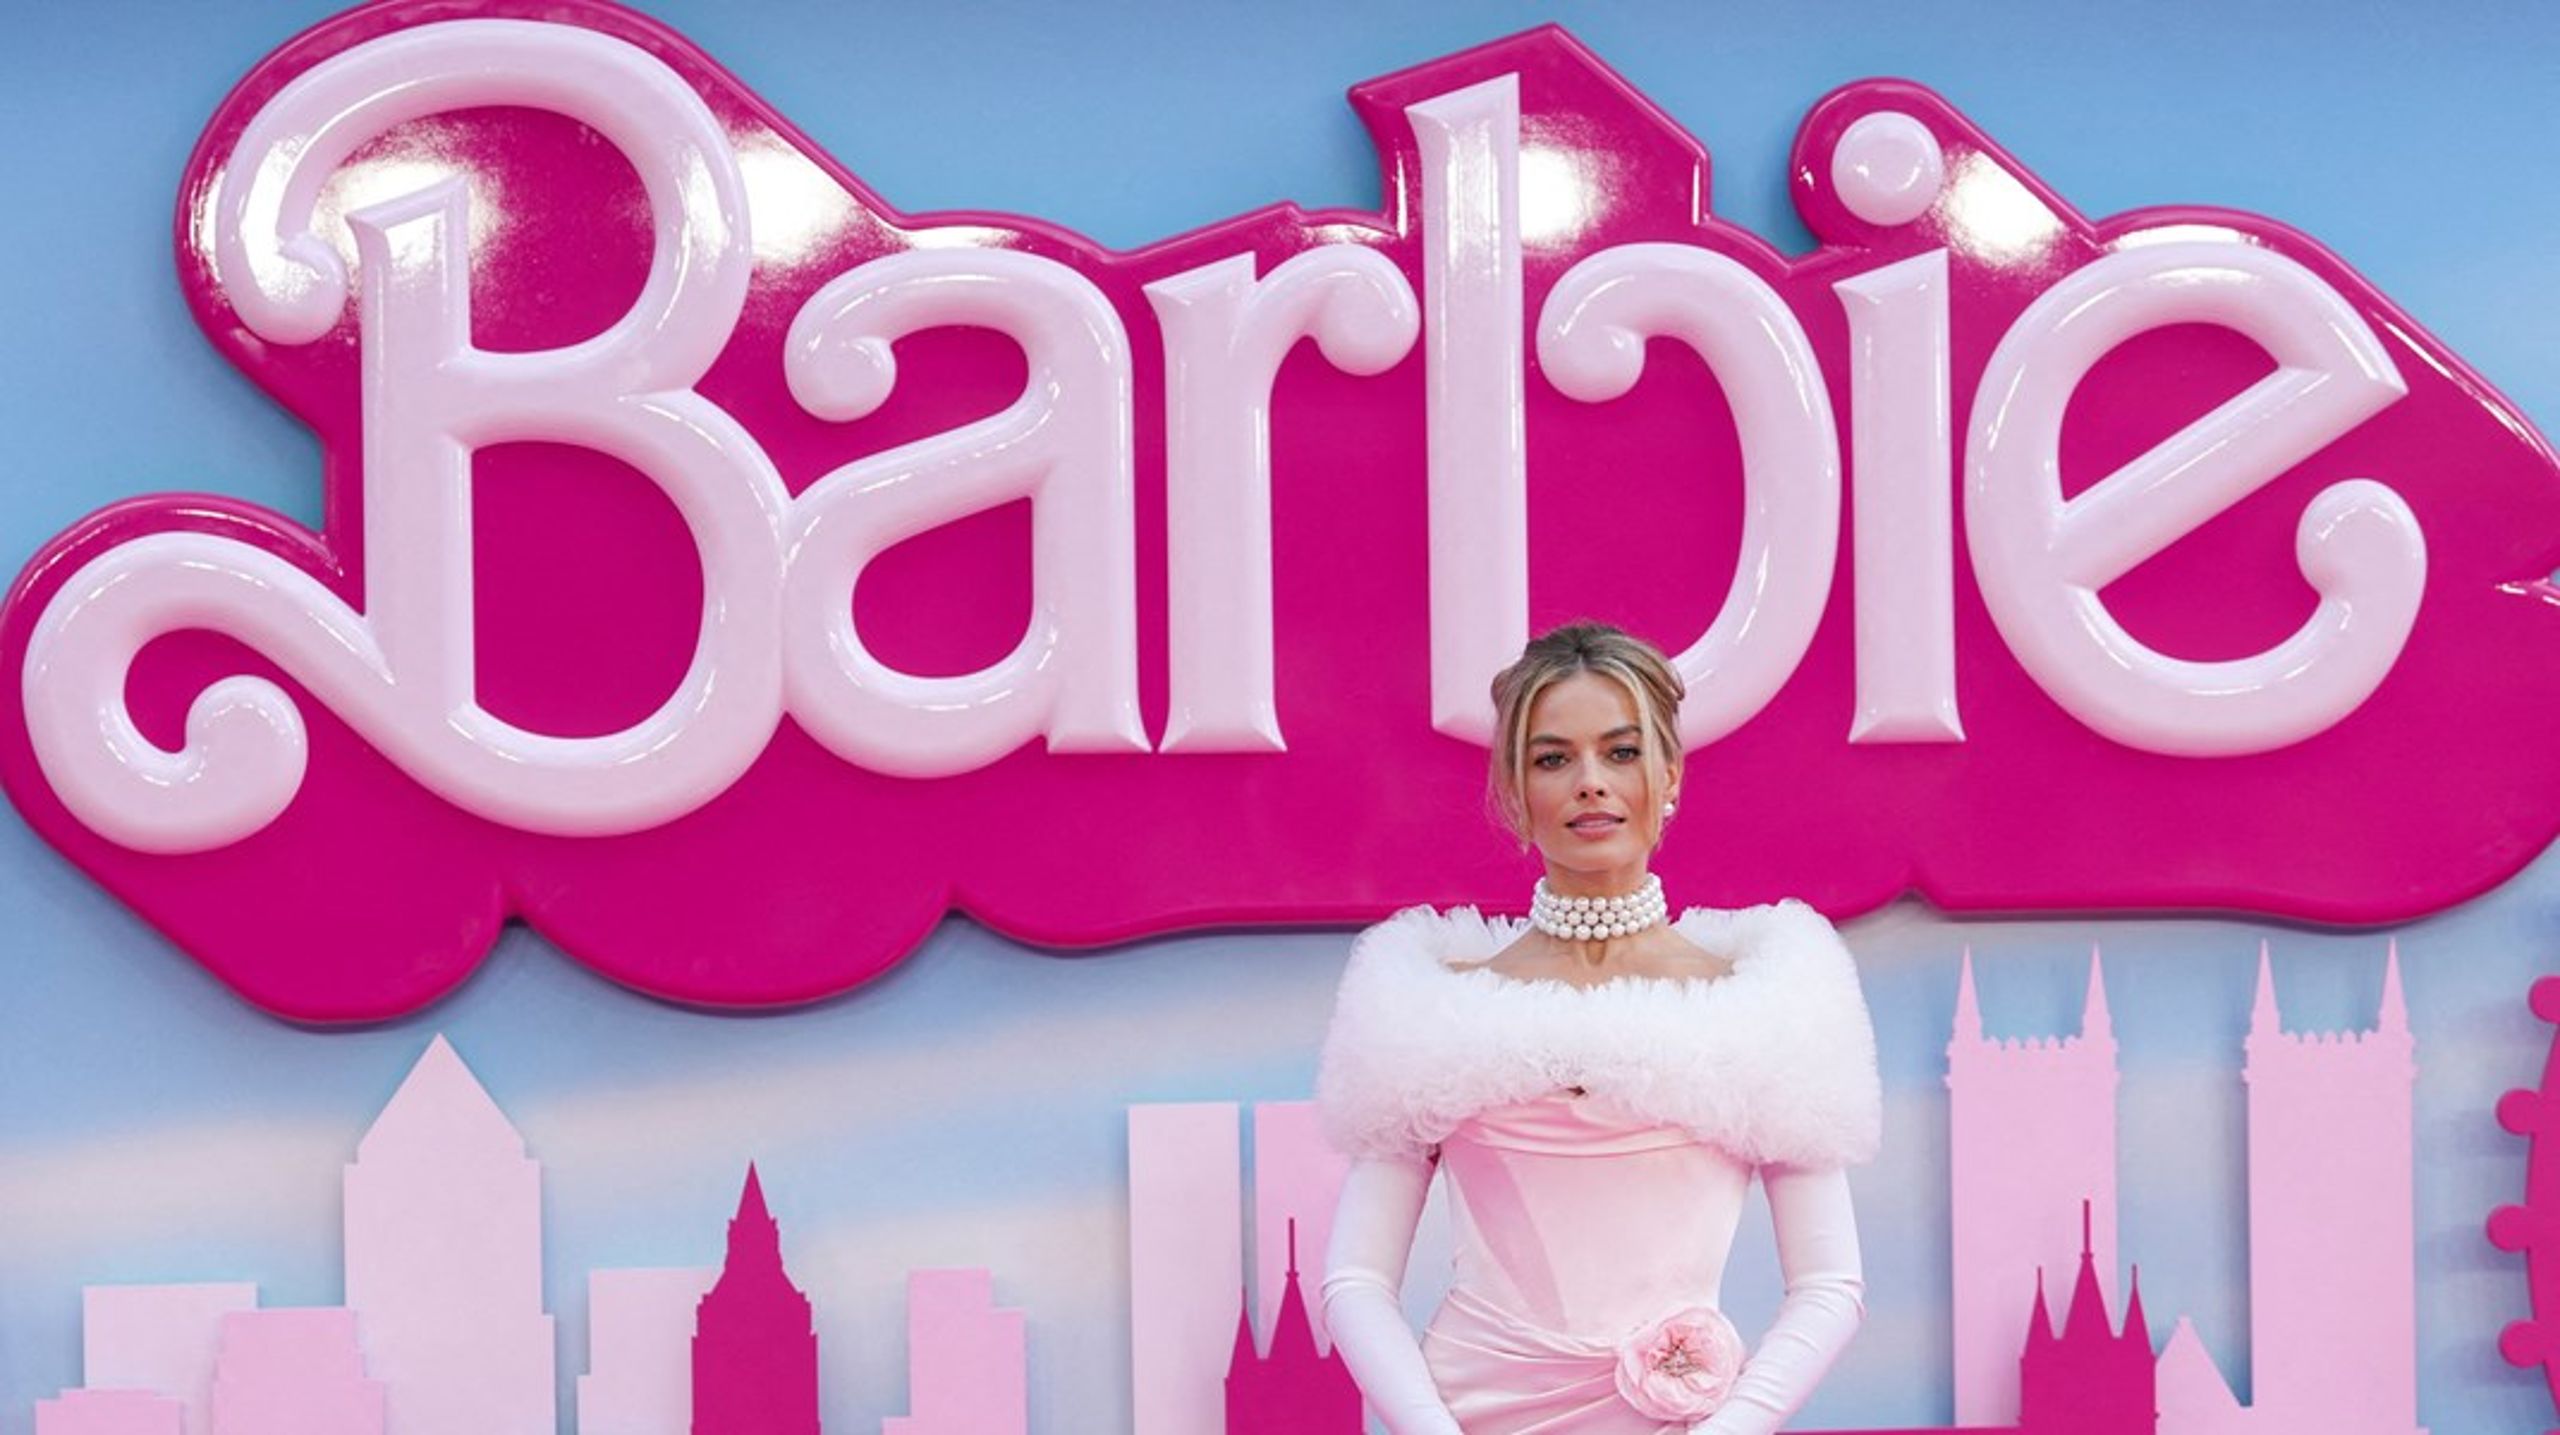 Vi lod os forføre af den fantastiske pink Barbieverden samt det blændende cast med Margot Robbie som hovedpersonen ”stereotype Barbie”. Alligevel forlod vi biografen med en dårlig smag i munden, skriver&nbsp;Rikke Viemose.